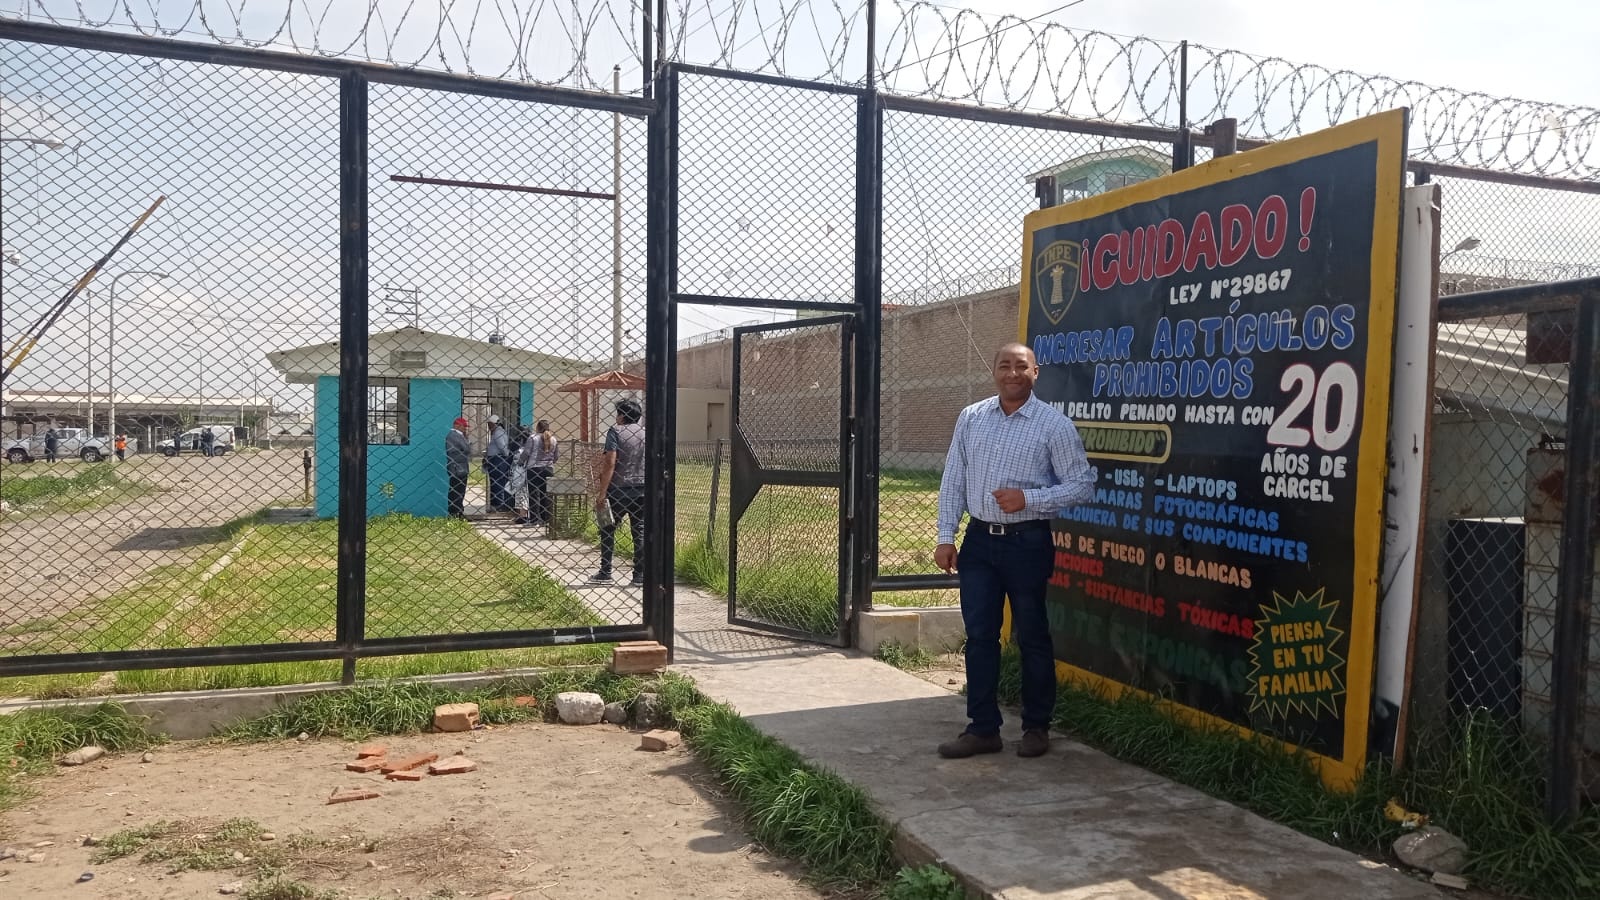 Consulado en Lima coordina campaña de salud para los internos en Arequipa